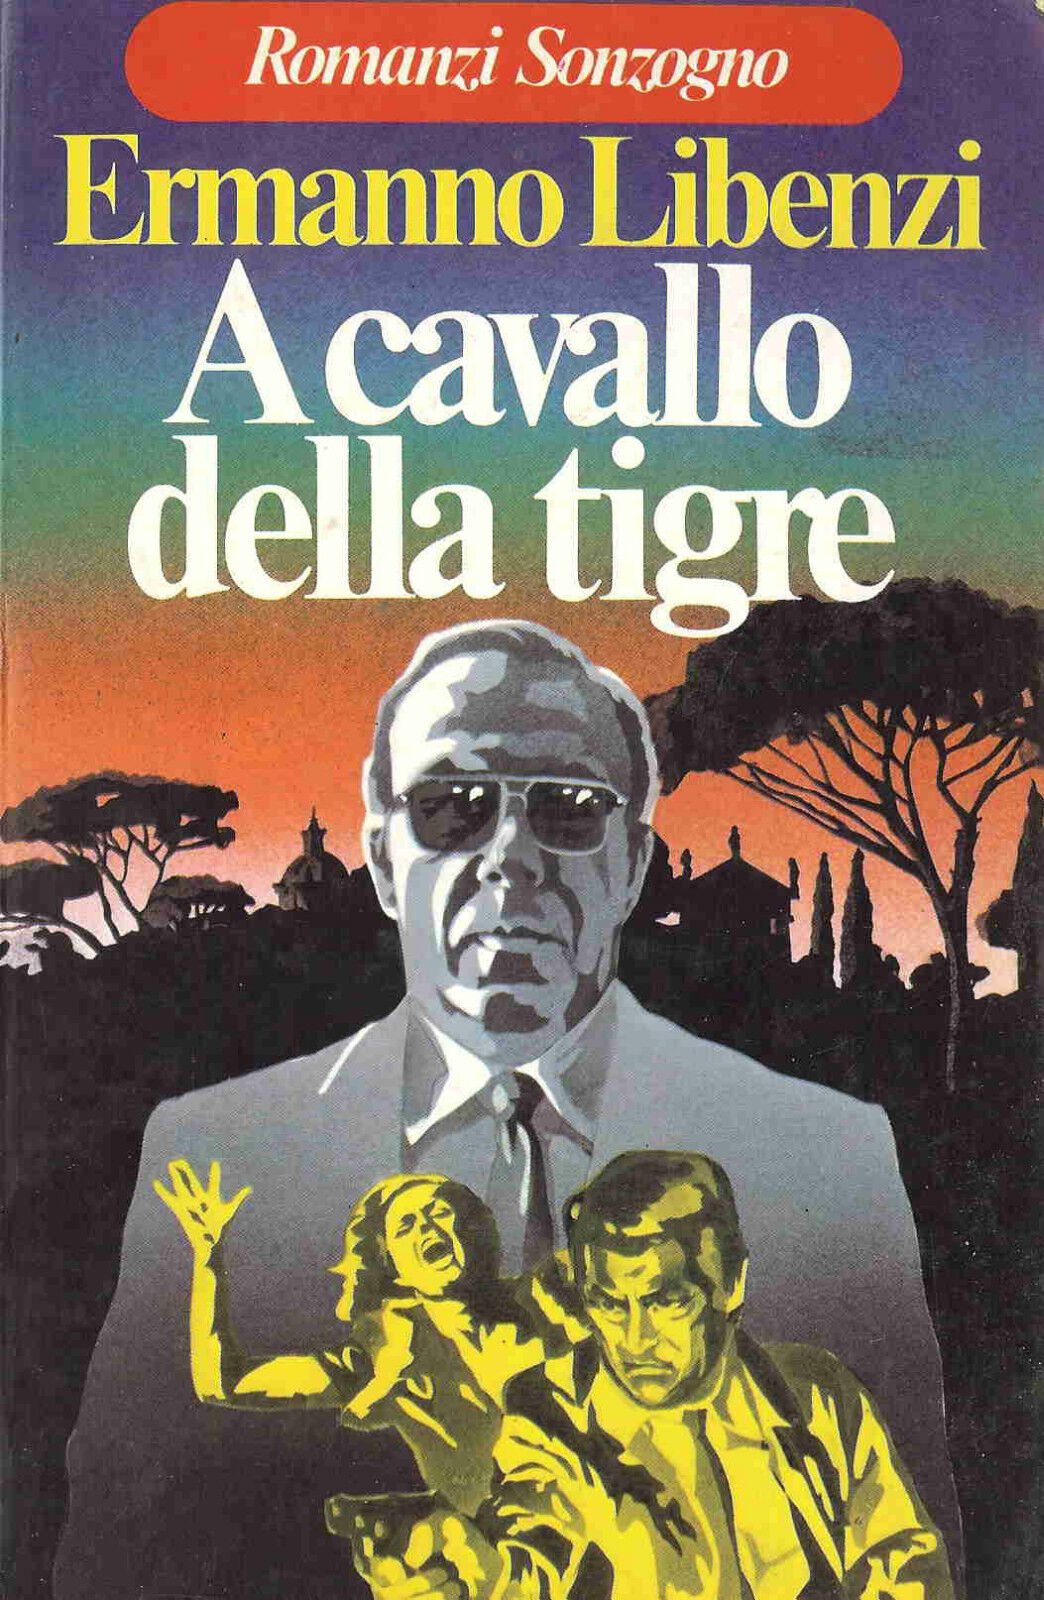 A cavallo della tigre, RARO Libenzi Ermanno, Sonzogno, 1978, 1? edizione